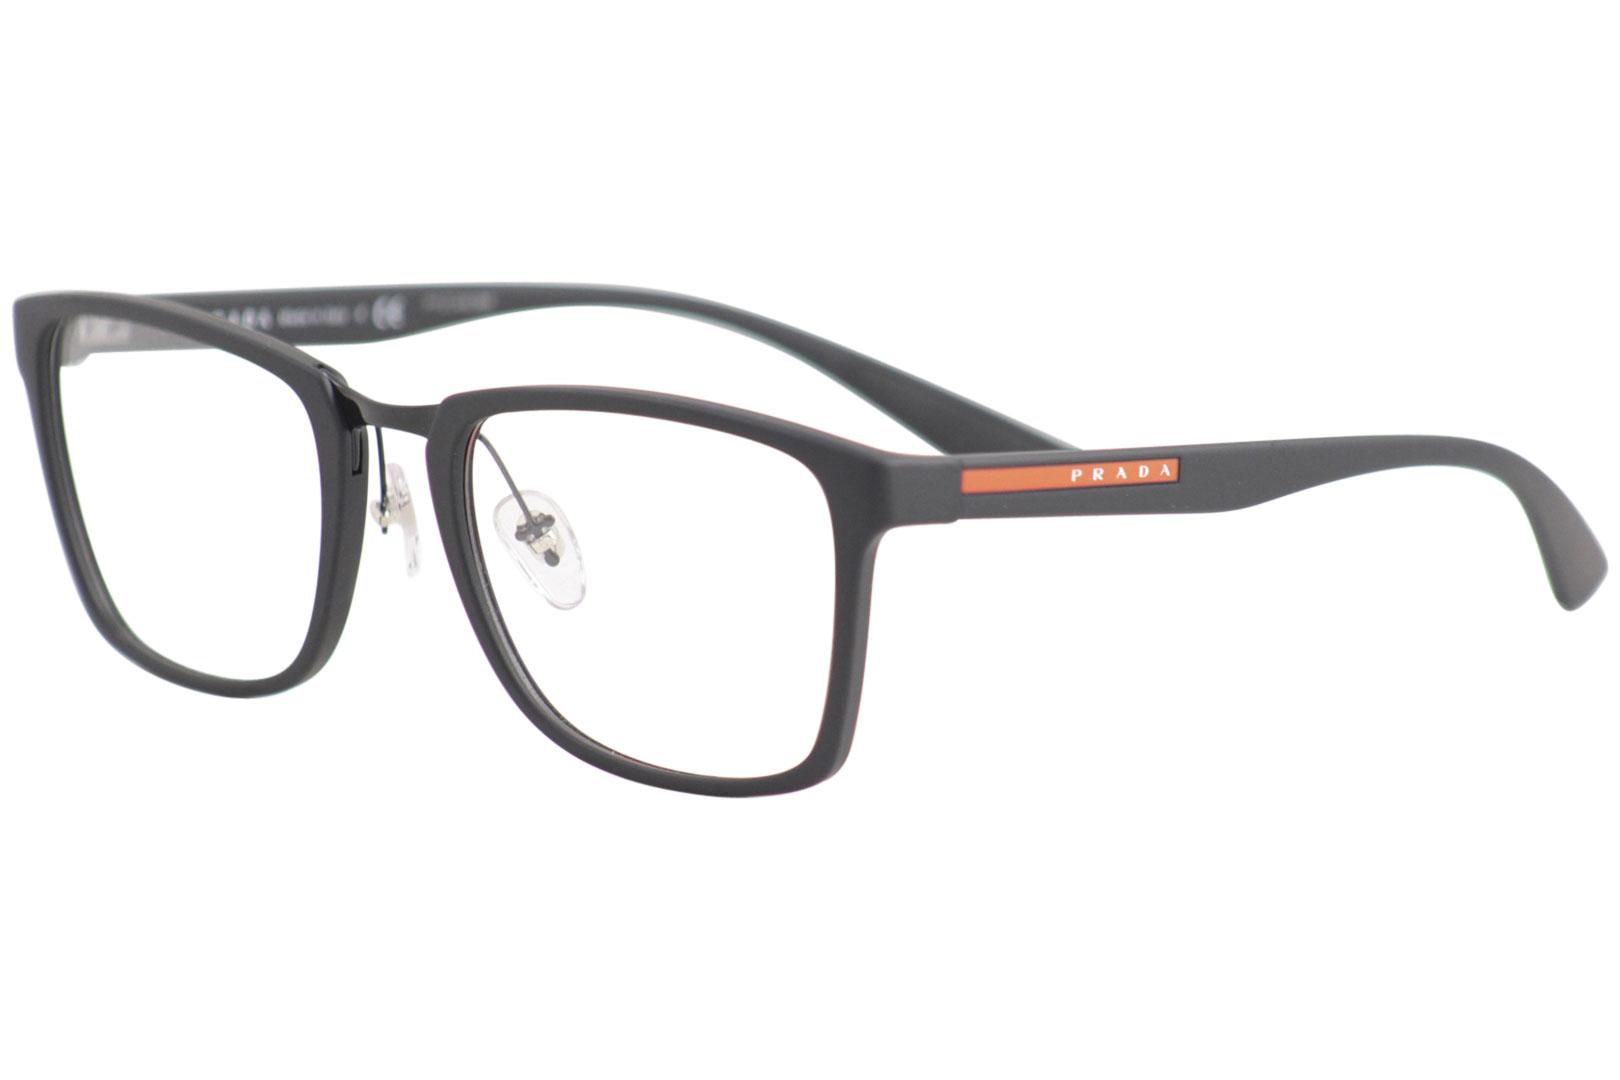 Prada Mens Eyeglasses | lupon.gov.ph